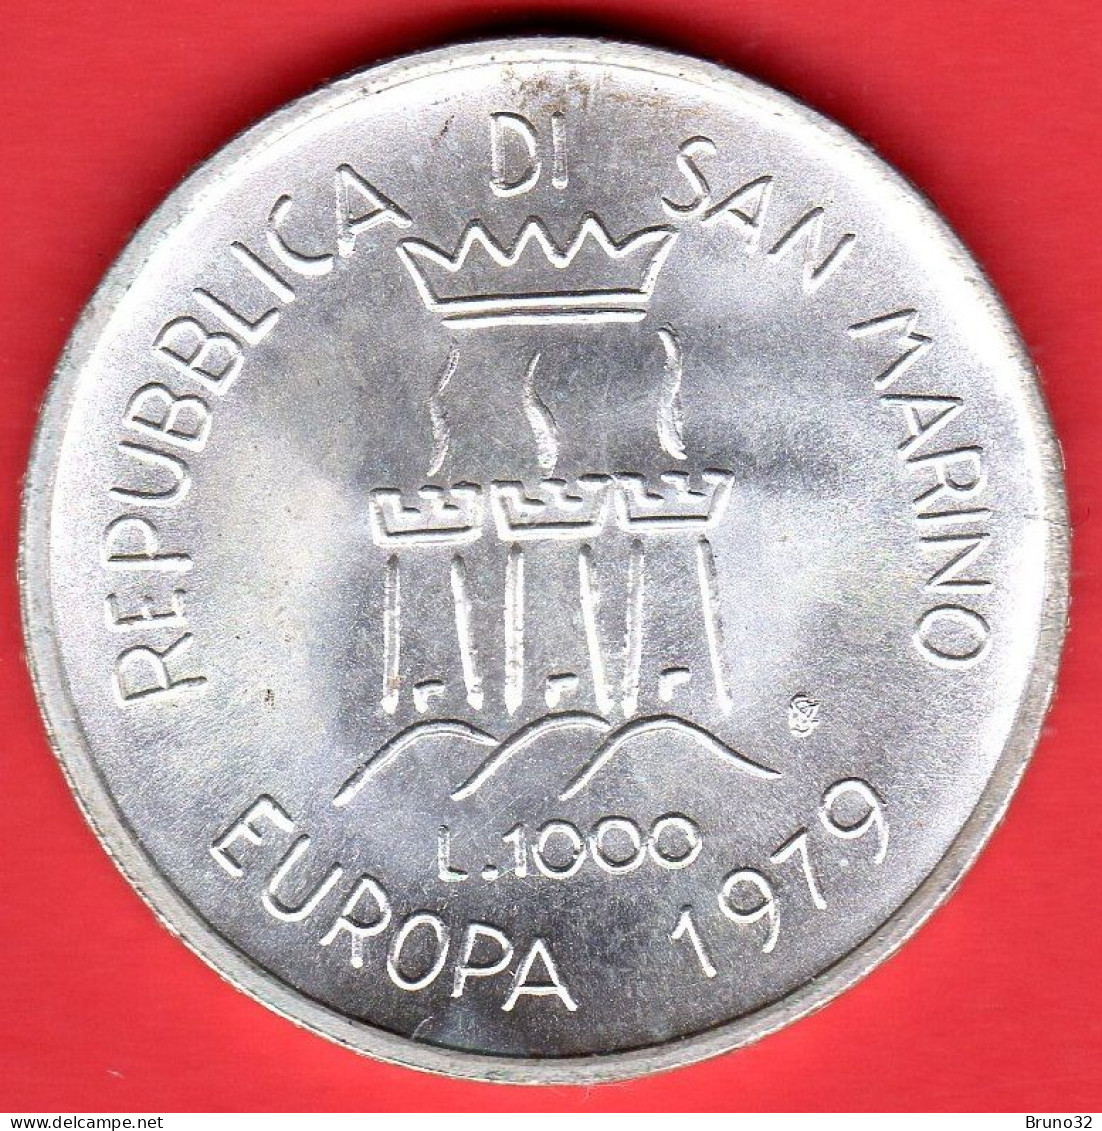 SAN MARINO - 1979 - 1000 Lire Europa - FDC/UNC - Come Da Foto - Saint-Marin